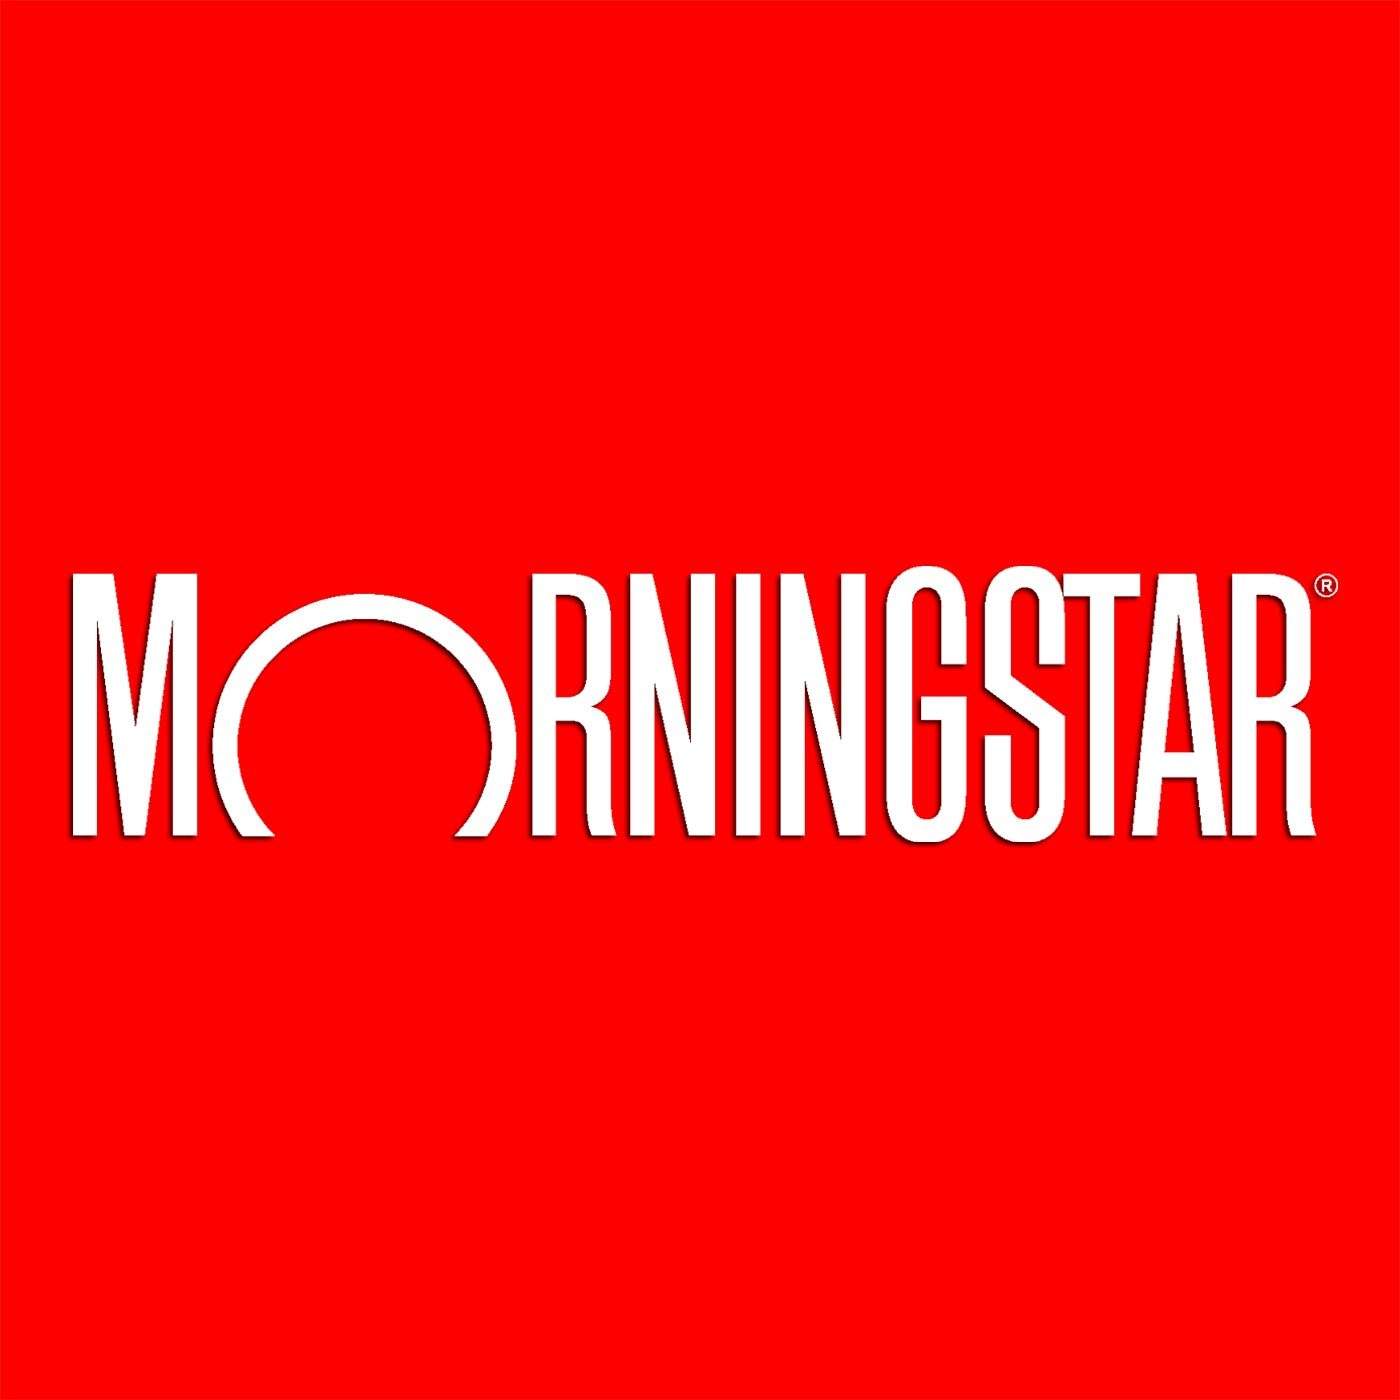 Morningstar Logo - Morningstar-logo - No More Practice Education